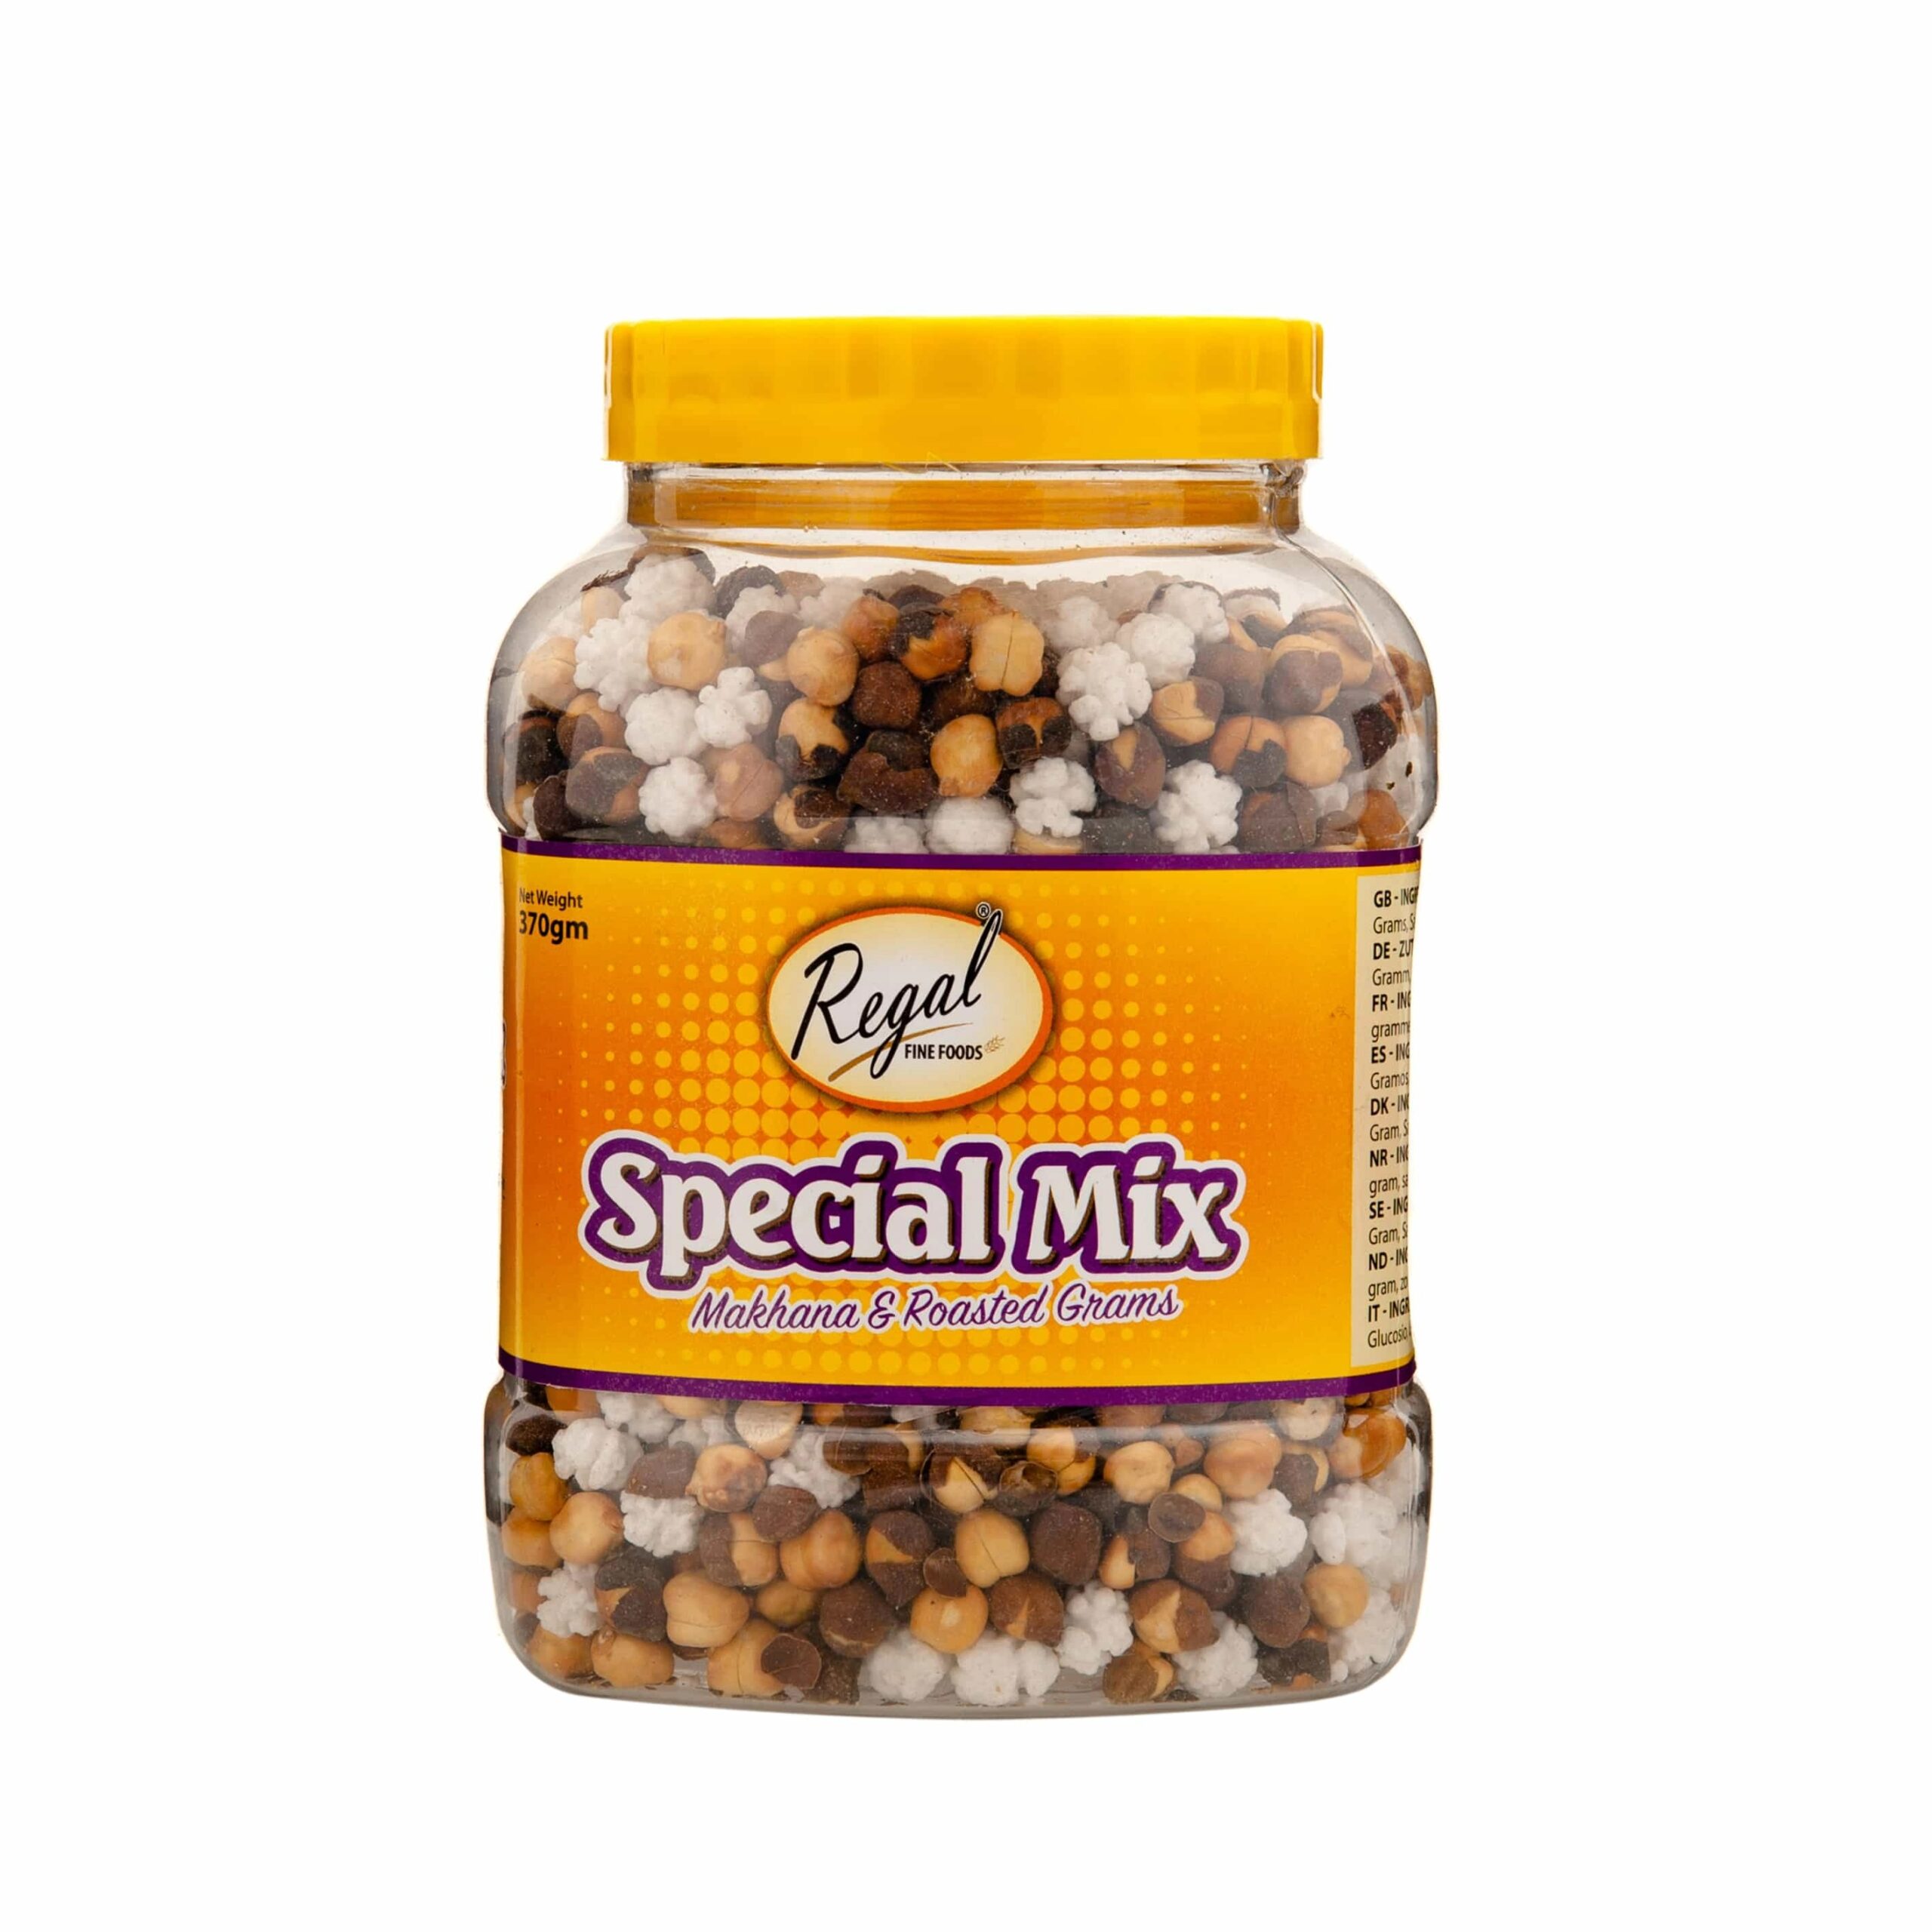 Regal Special Mix